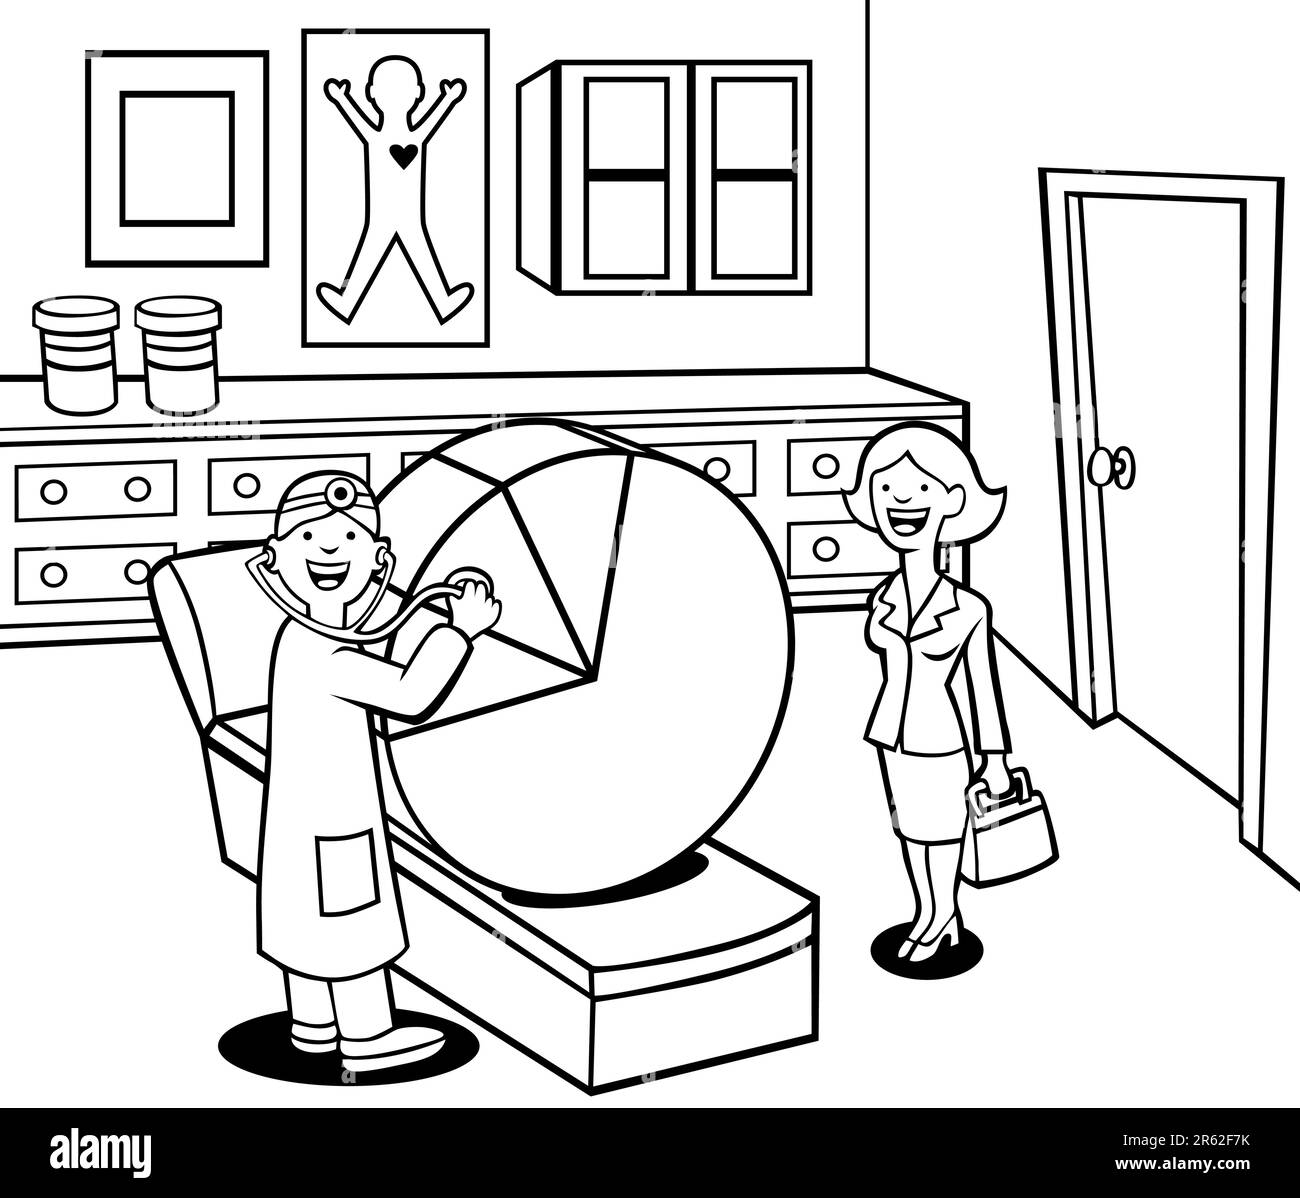 Cartoon eines Arztes, der eine Kuchenakte durchsucht, während eine professionelle Frau zusieht. Stock Vektor